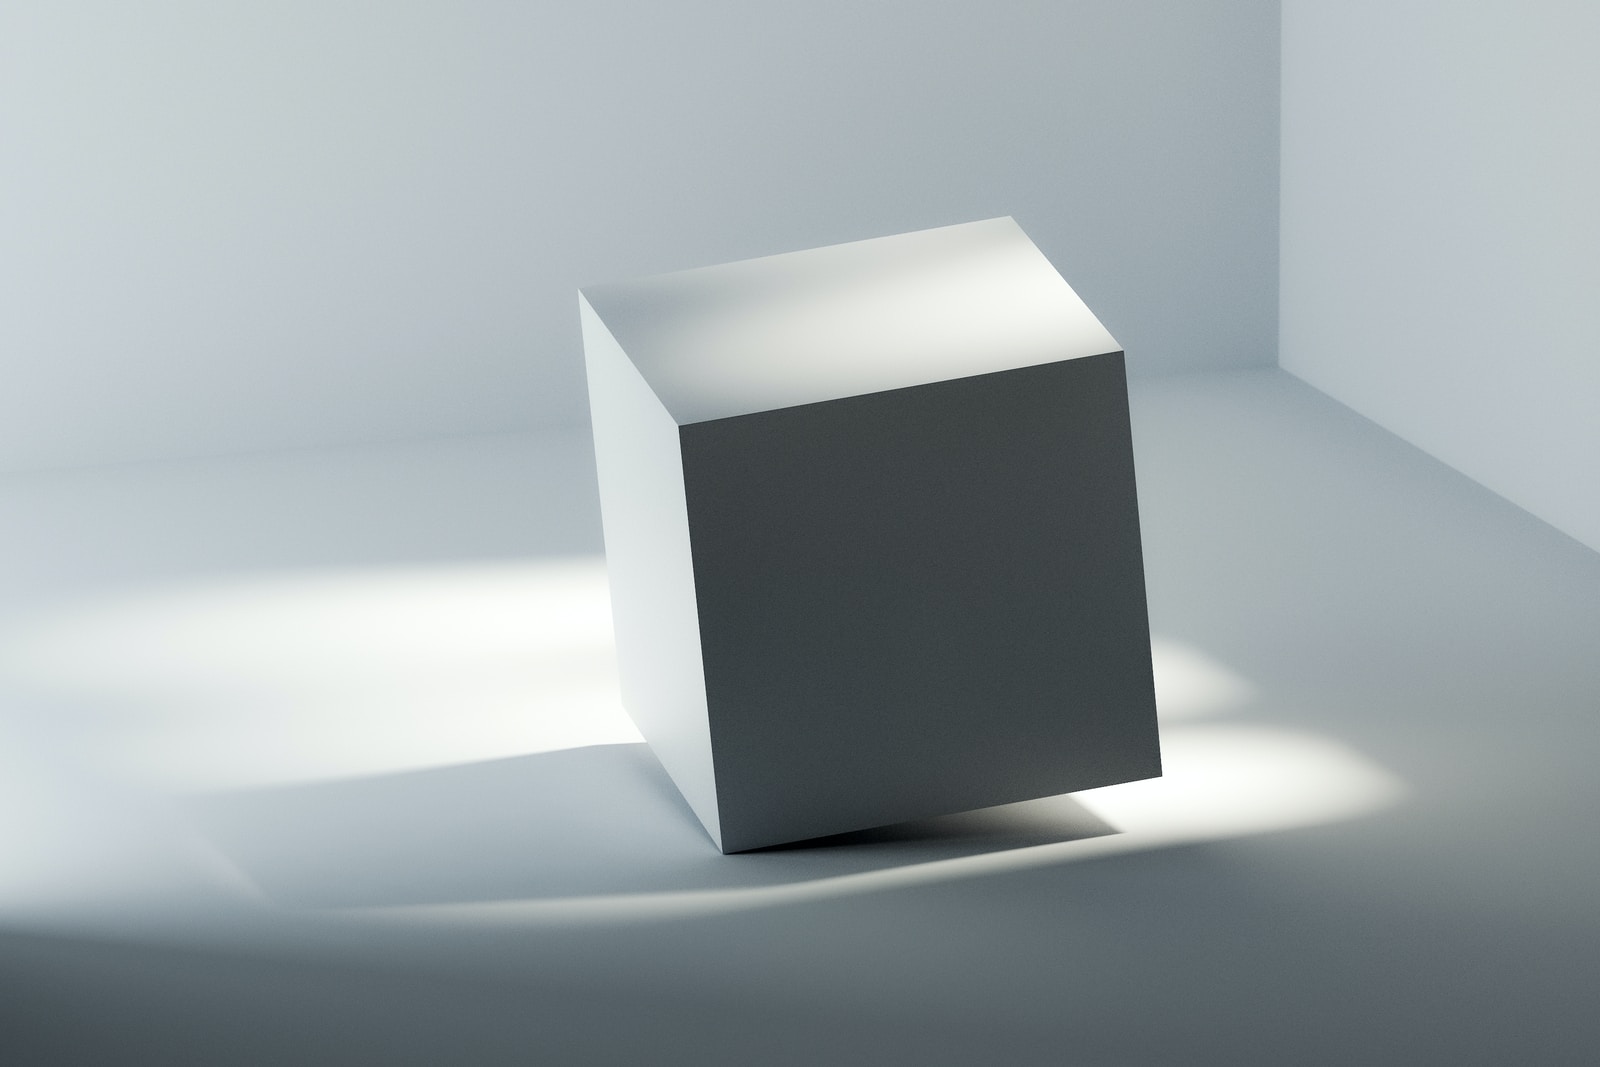 white box on white table